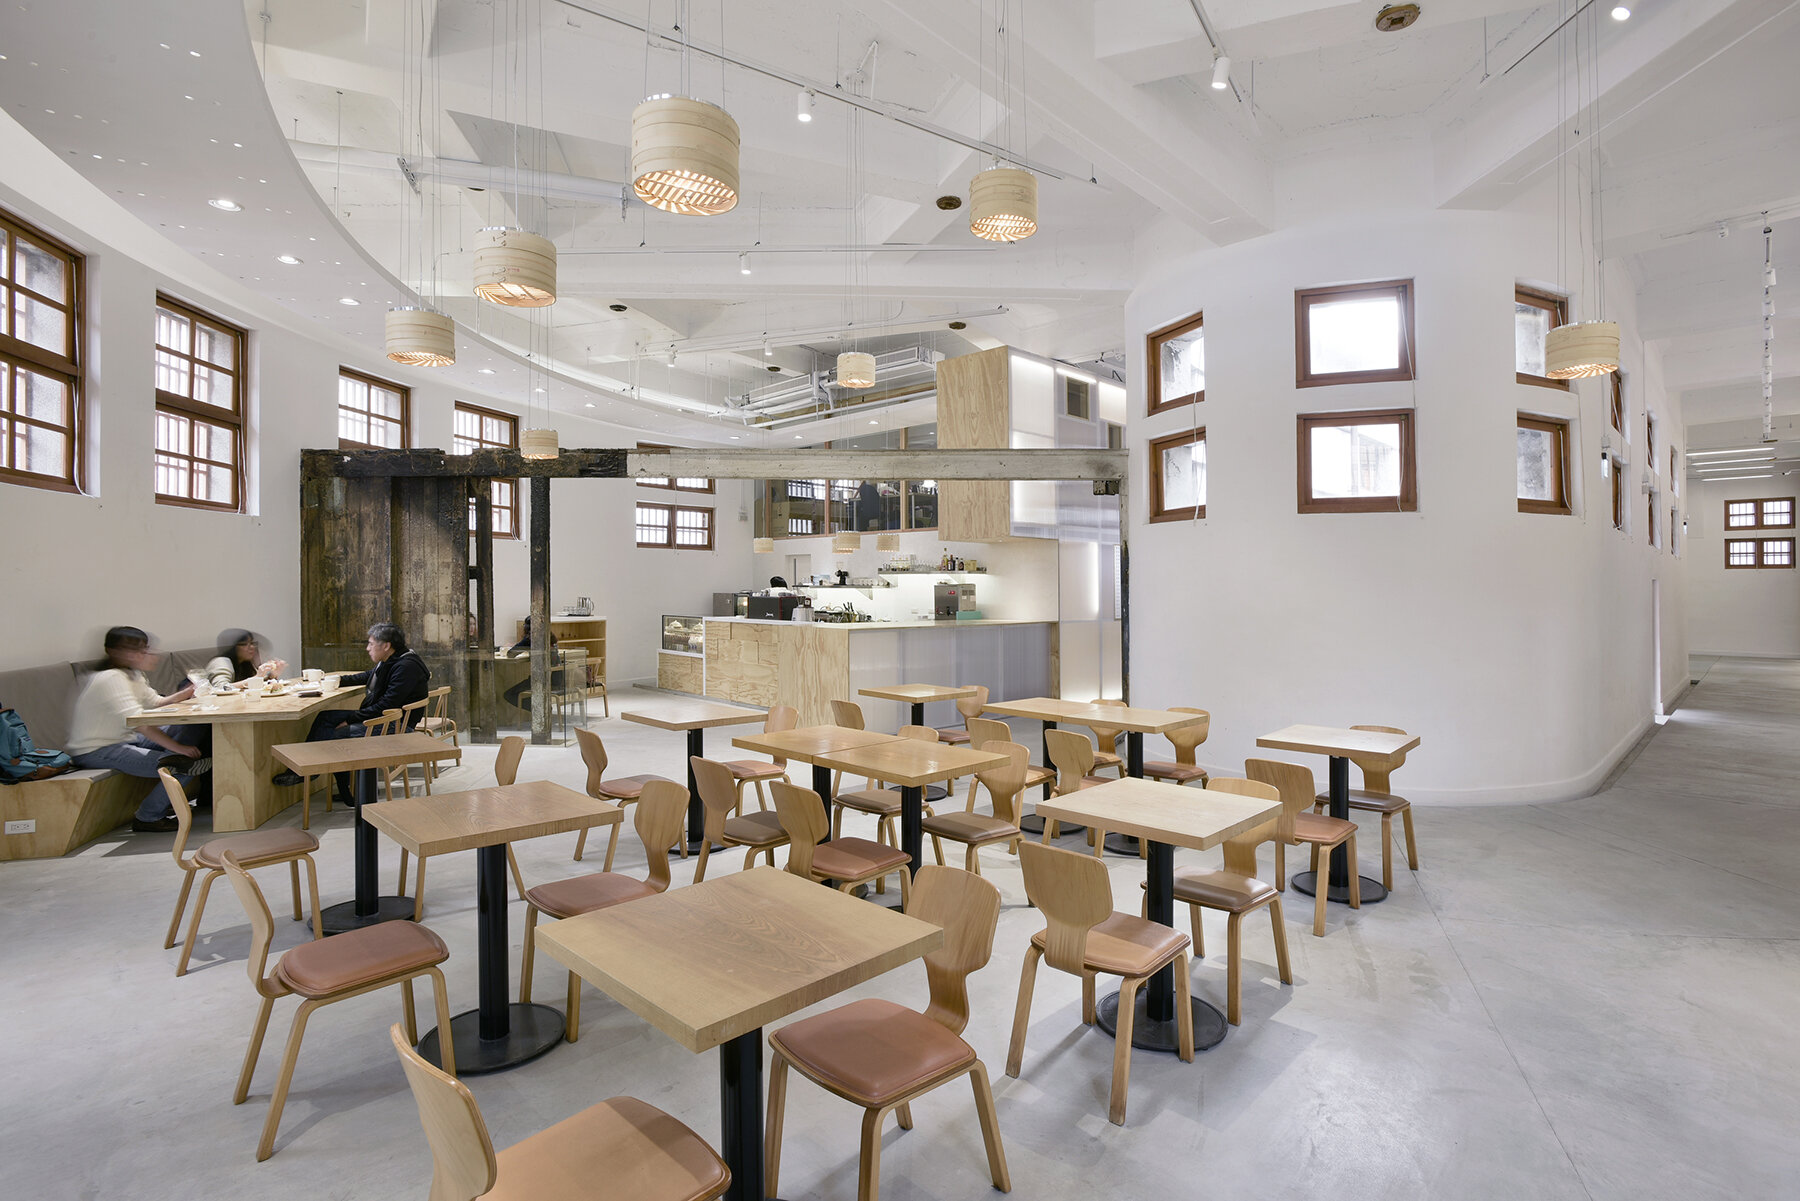 新富町文化市場空間照-汪德範攝影-007-作為交流與休憩空間的咖啡廳.jpg